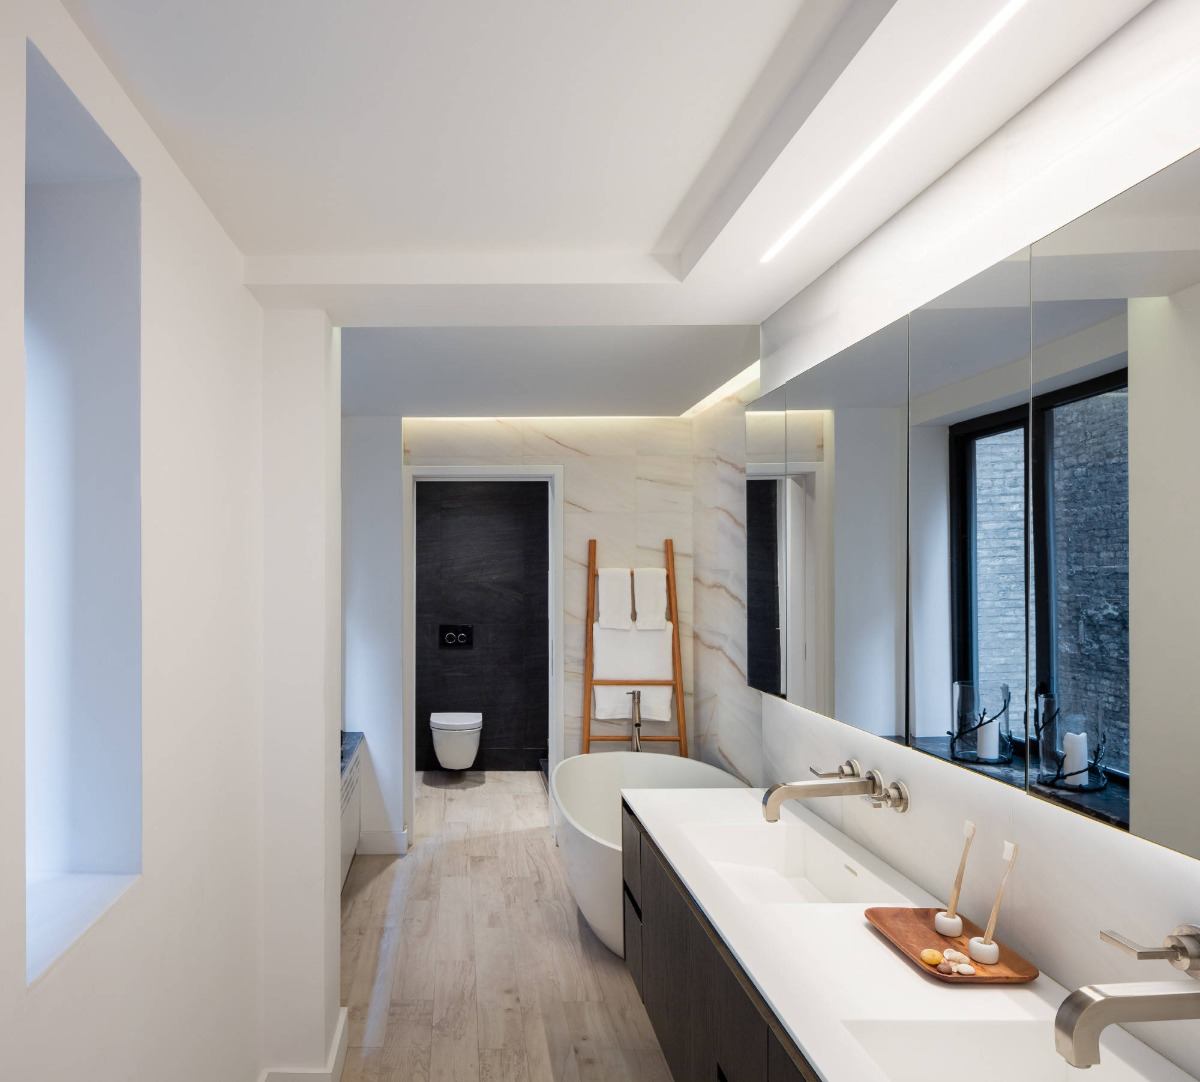 Indretning med strømlinet luksus i det lange badeværelse med træelementer